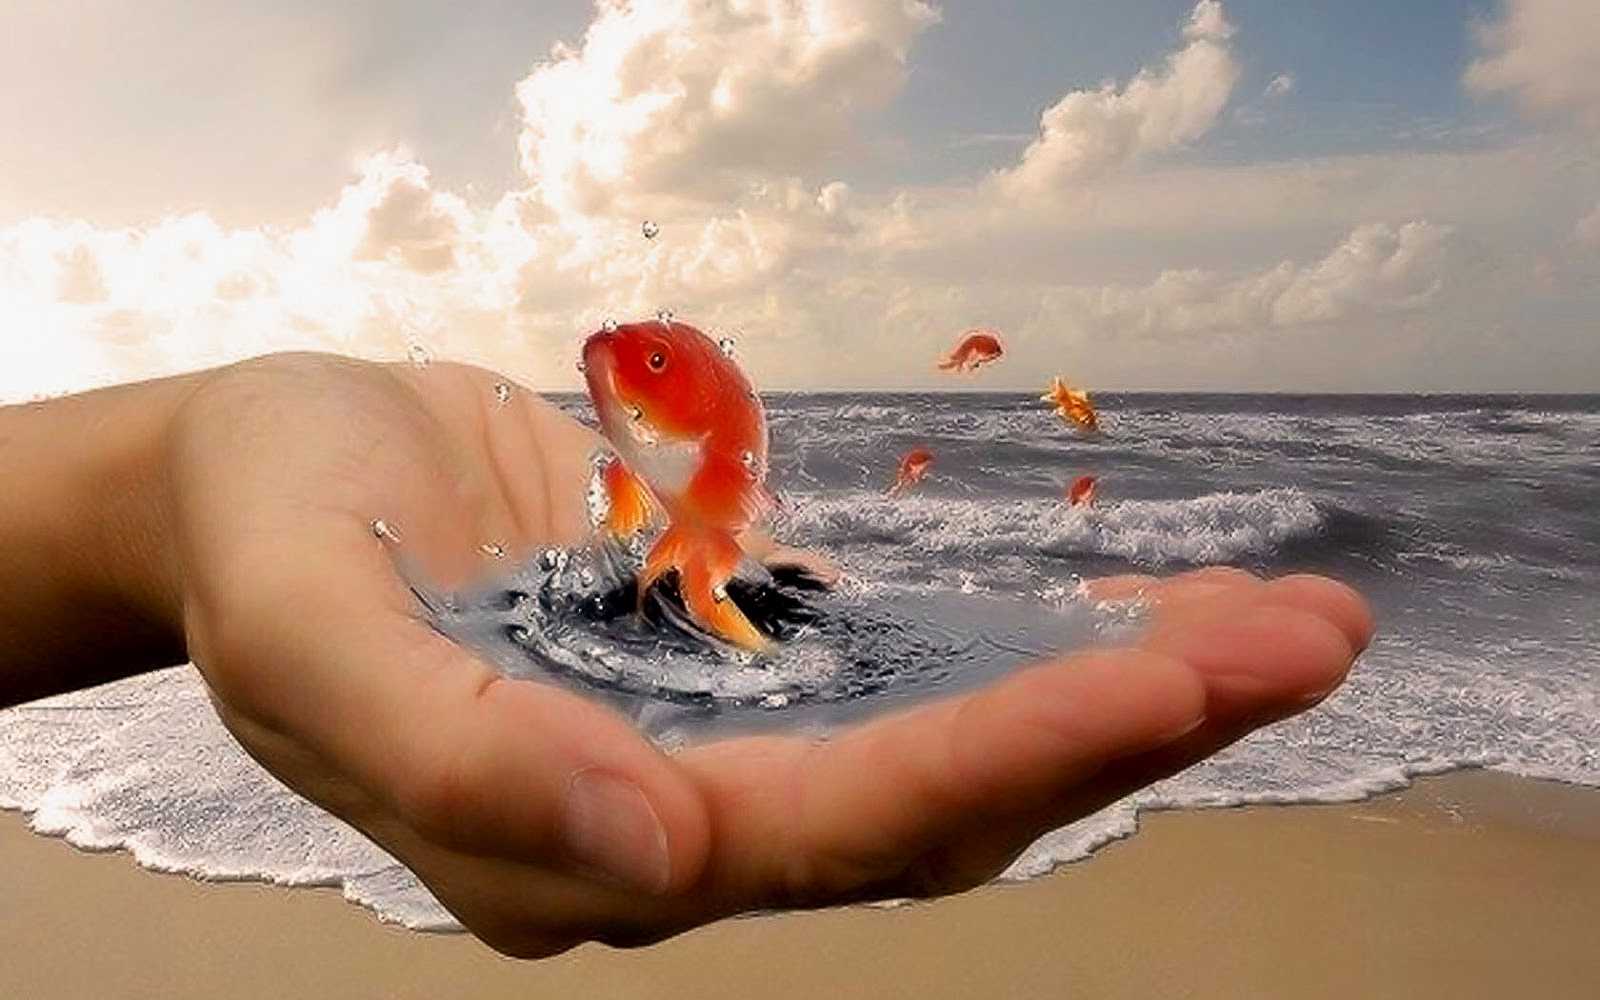 Душевных сил по настоящему добрым беречь природу. Золотая рыбка в руках. Золотая рыбка исполнение желаний. Добро у моря. Золотая рыбка исполняет желания.